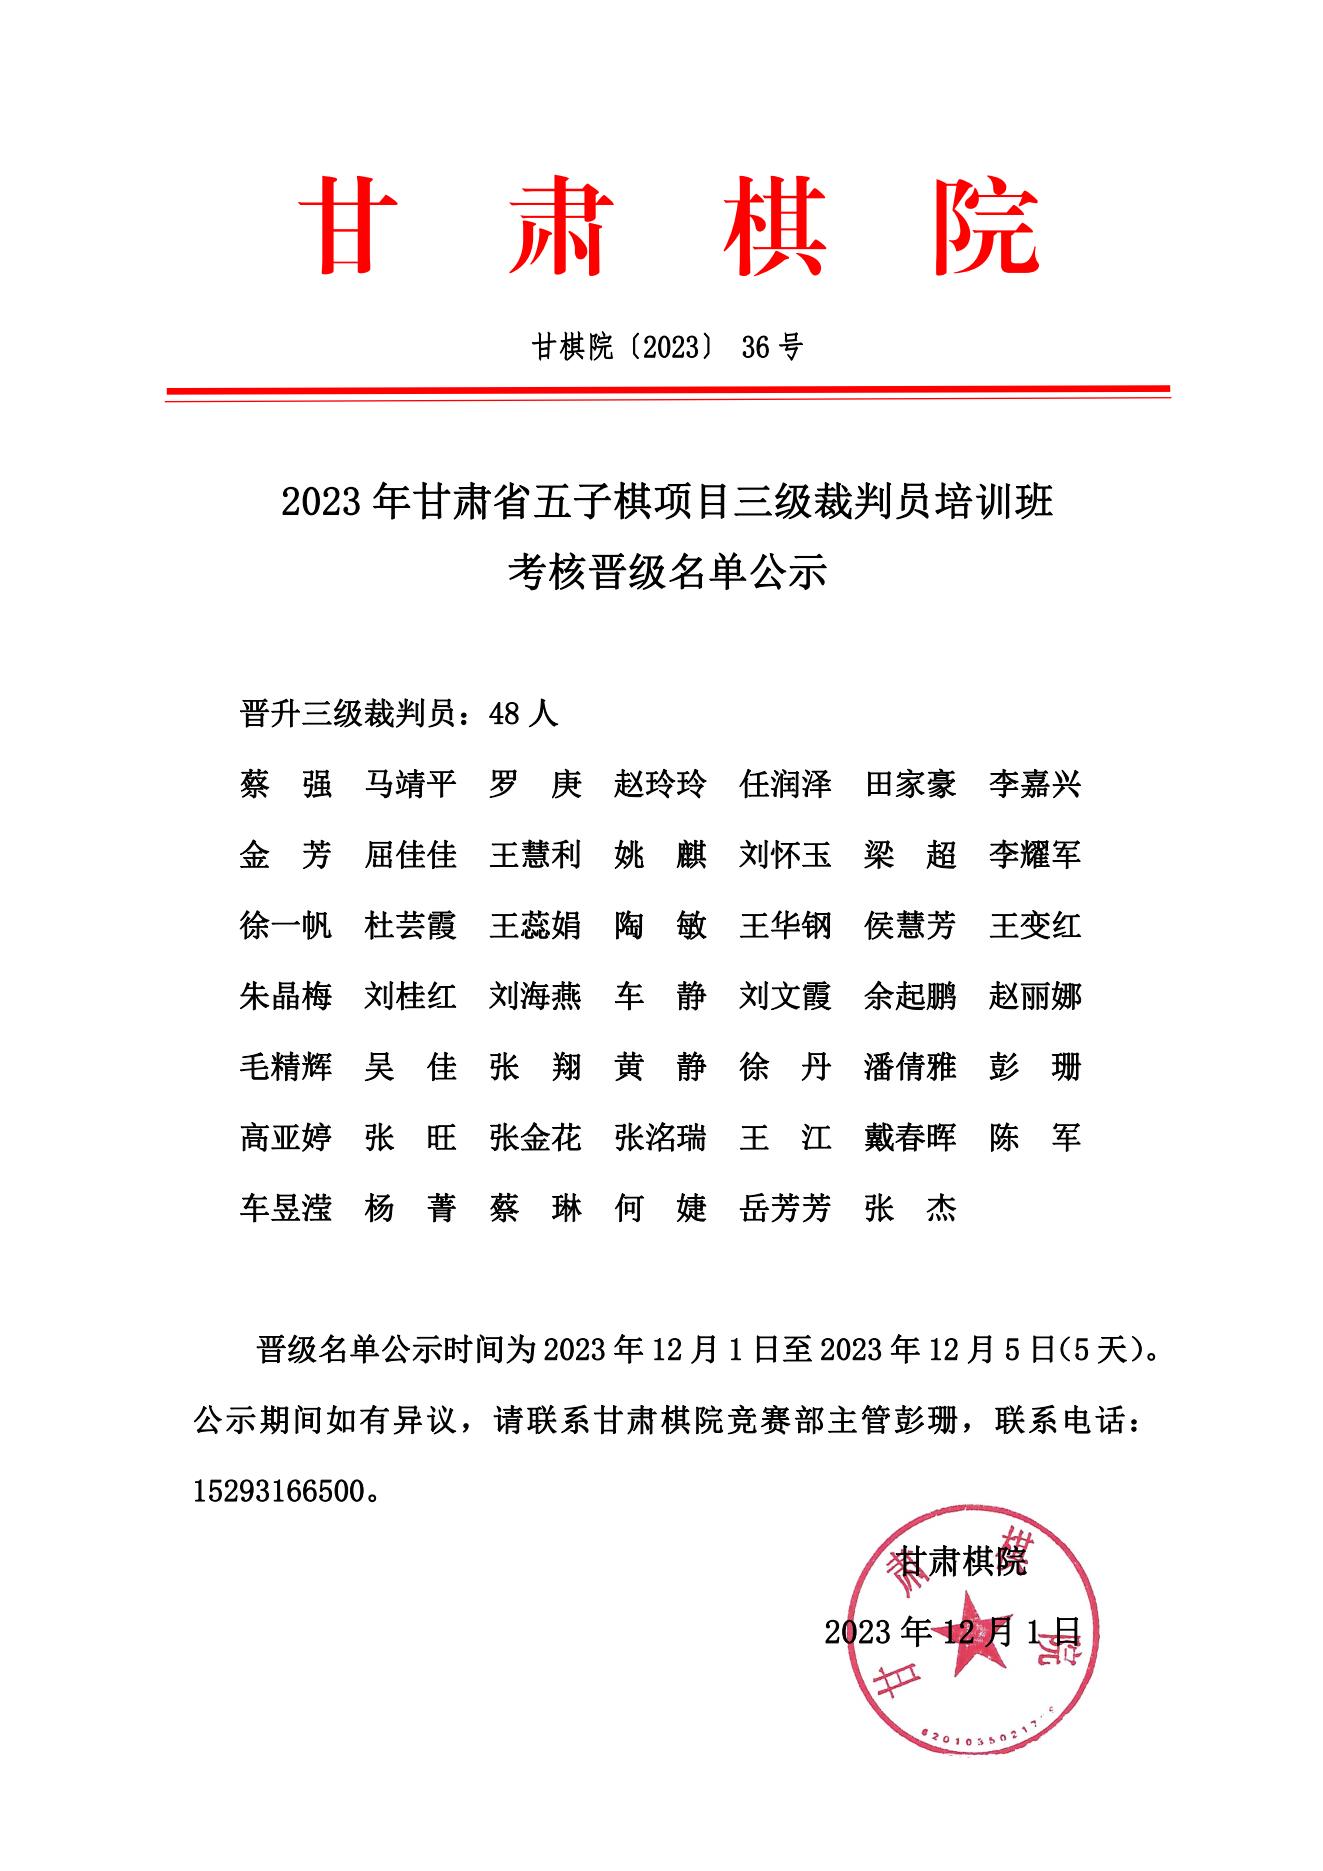 36 2023年甘肃省五子棋项目三级裁判员培训班考核晋级名单公示_00.jpg